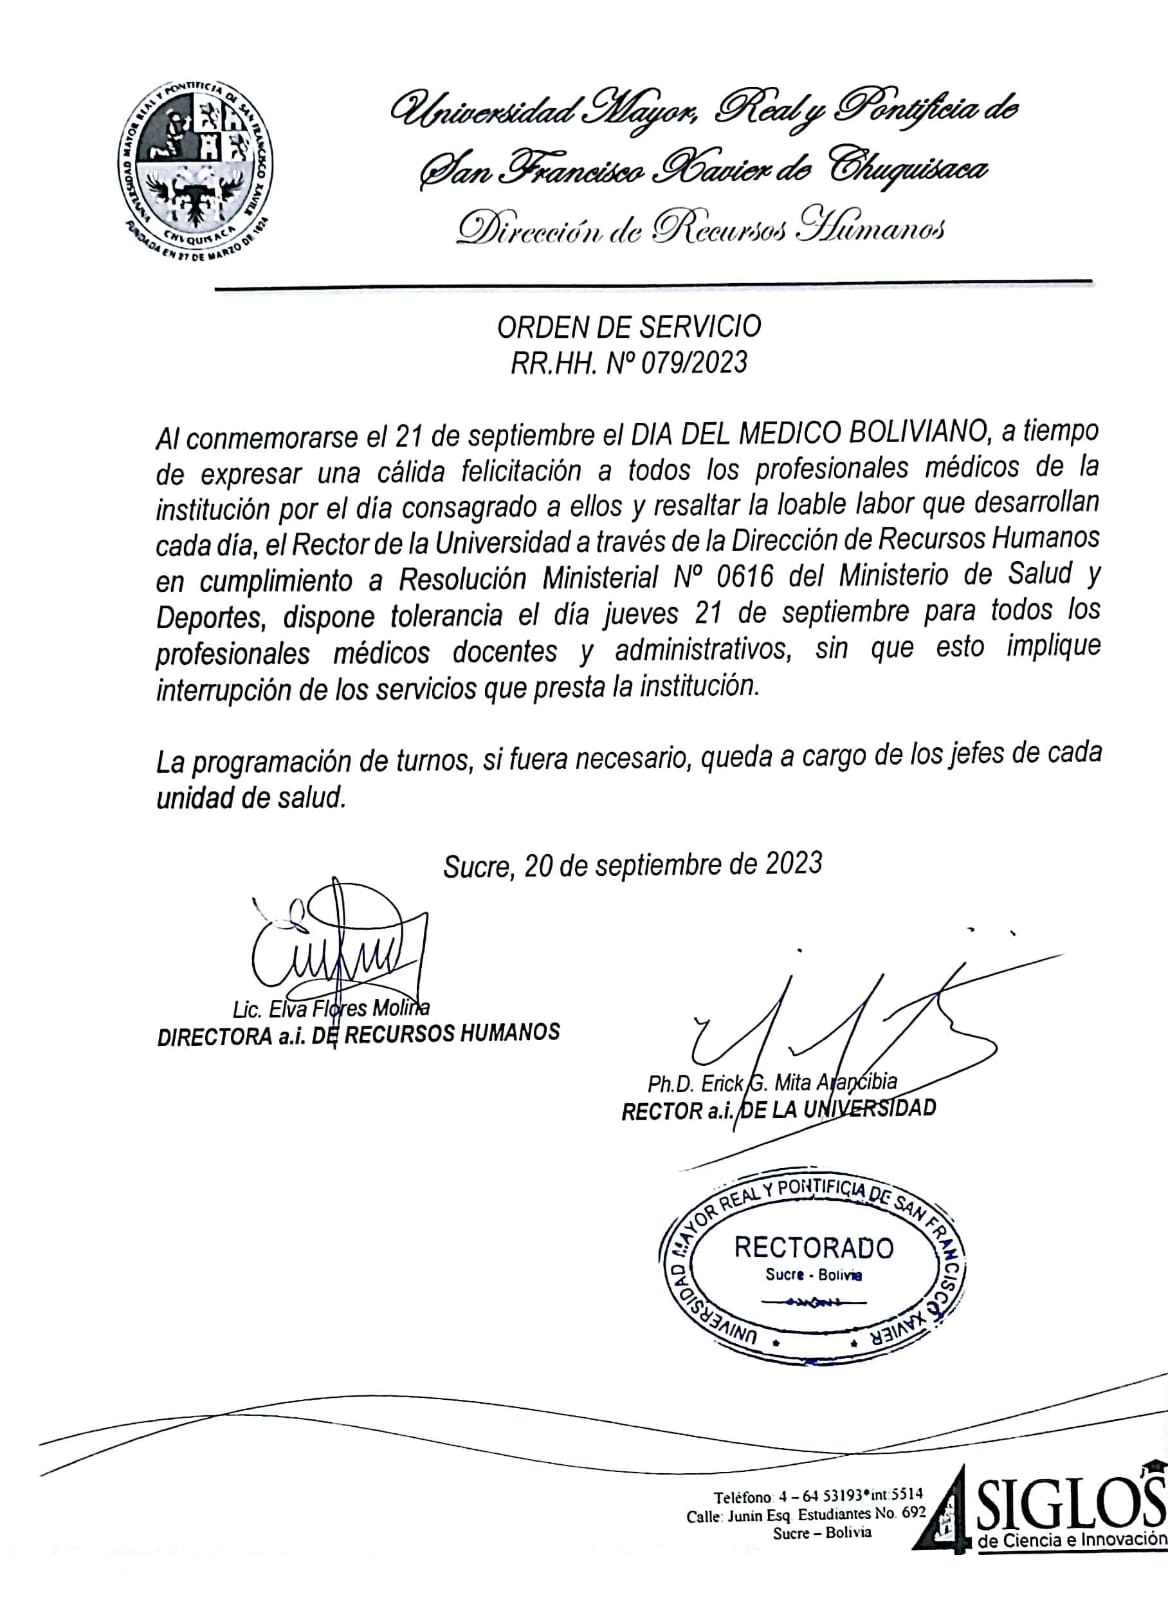 ORDEN DE SERVICIO RR.HH. Nº 079/2023, TOLERANCIA DÍA DEL MEDICO BOLIVIANO.